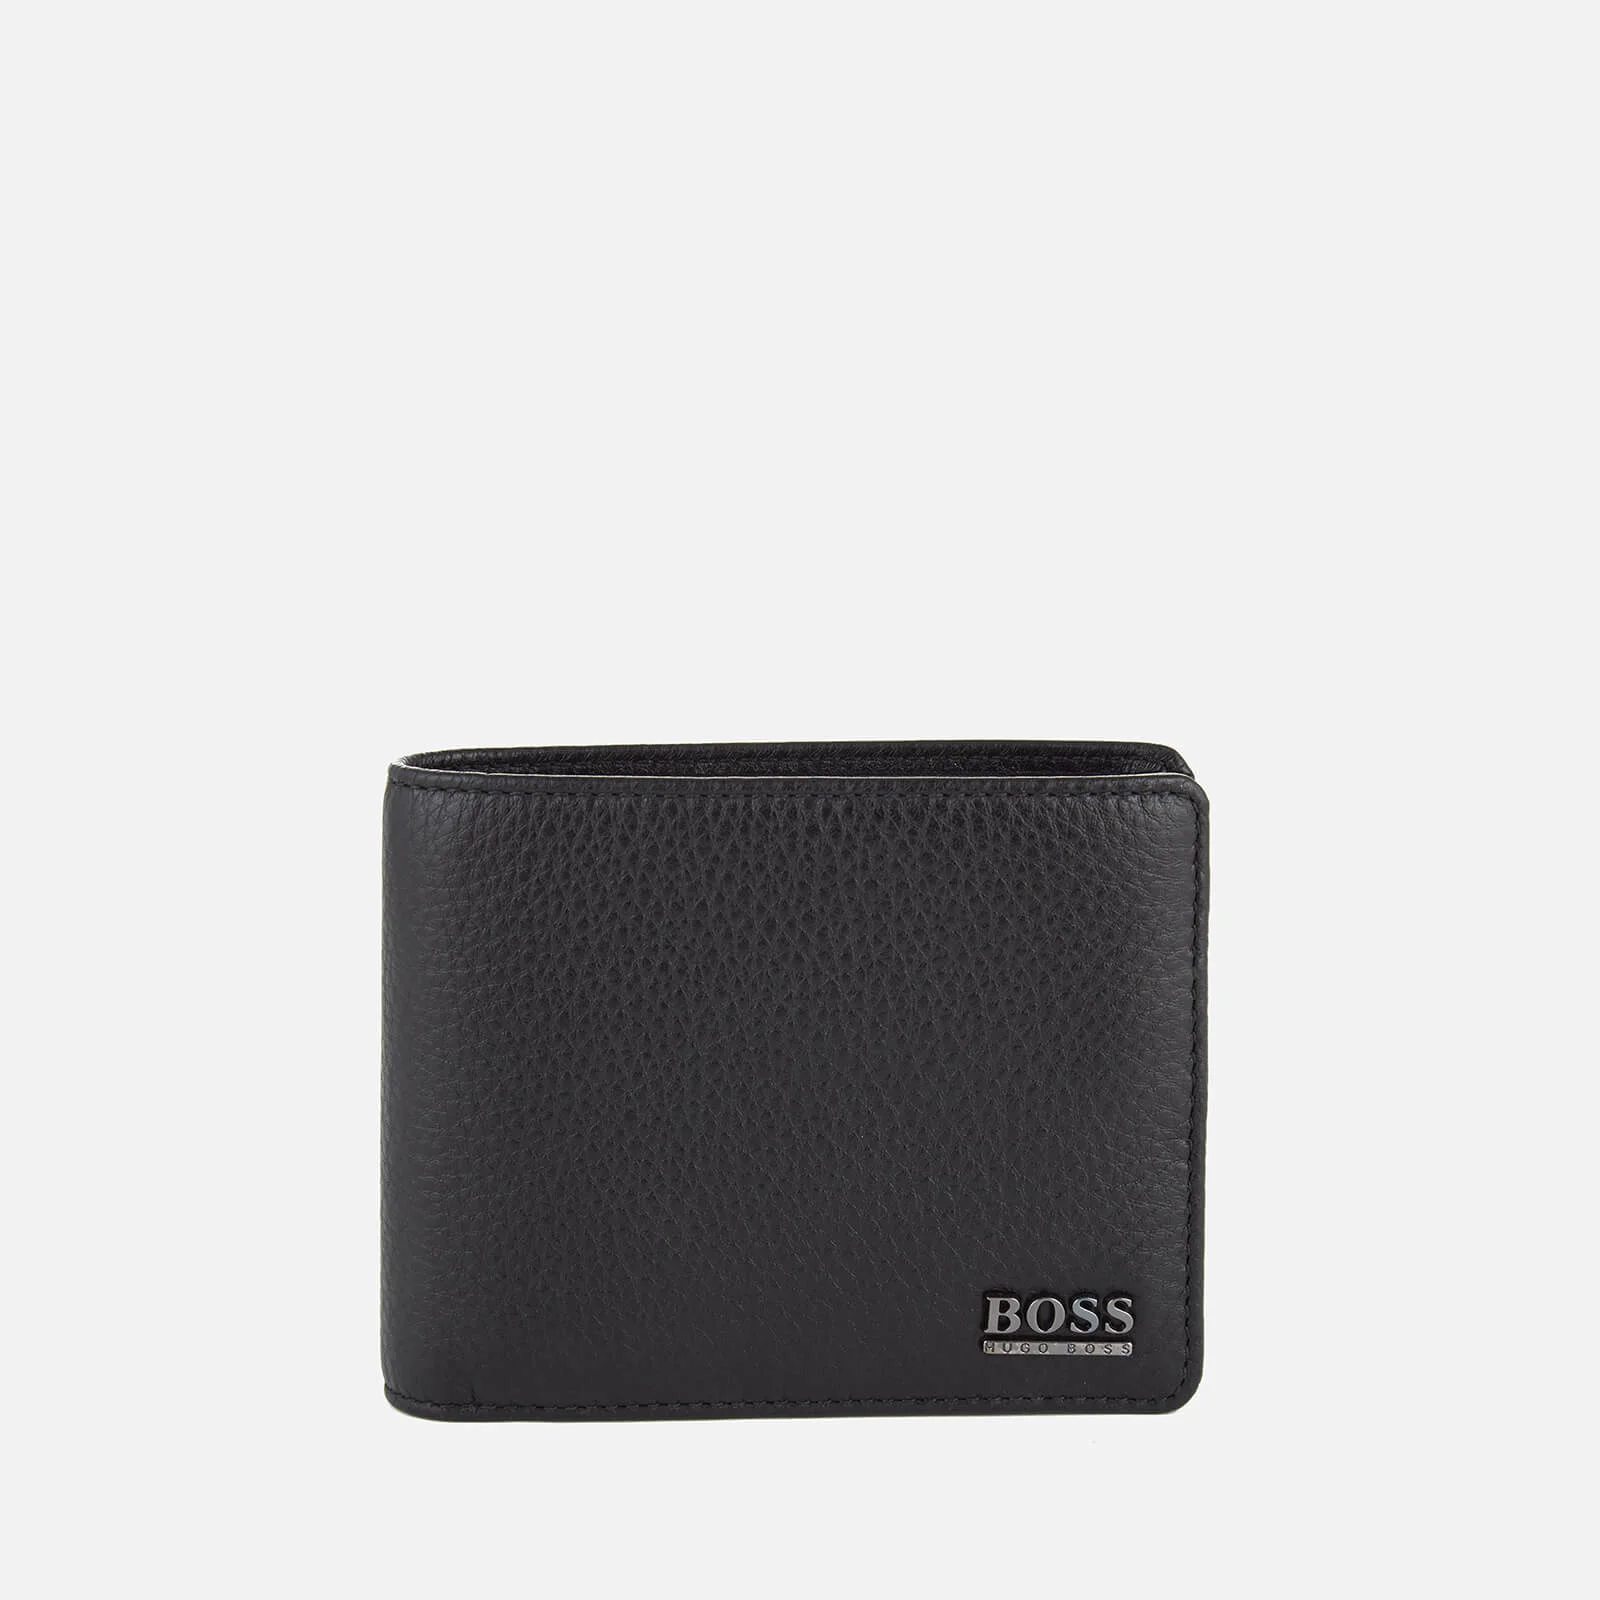 BOSS Hugo Boss Men's Moneme Leather Wallet - Black Image 1